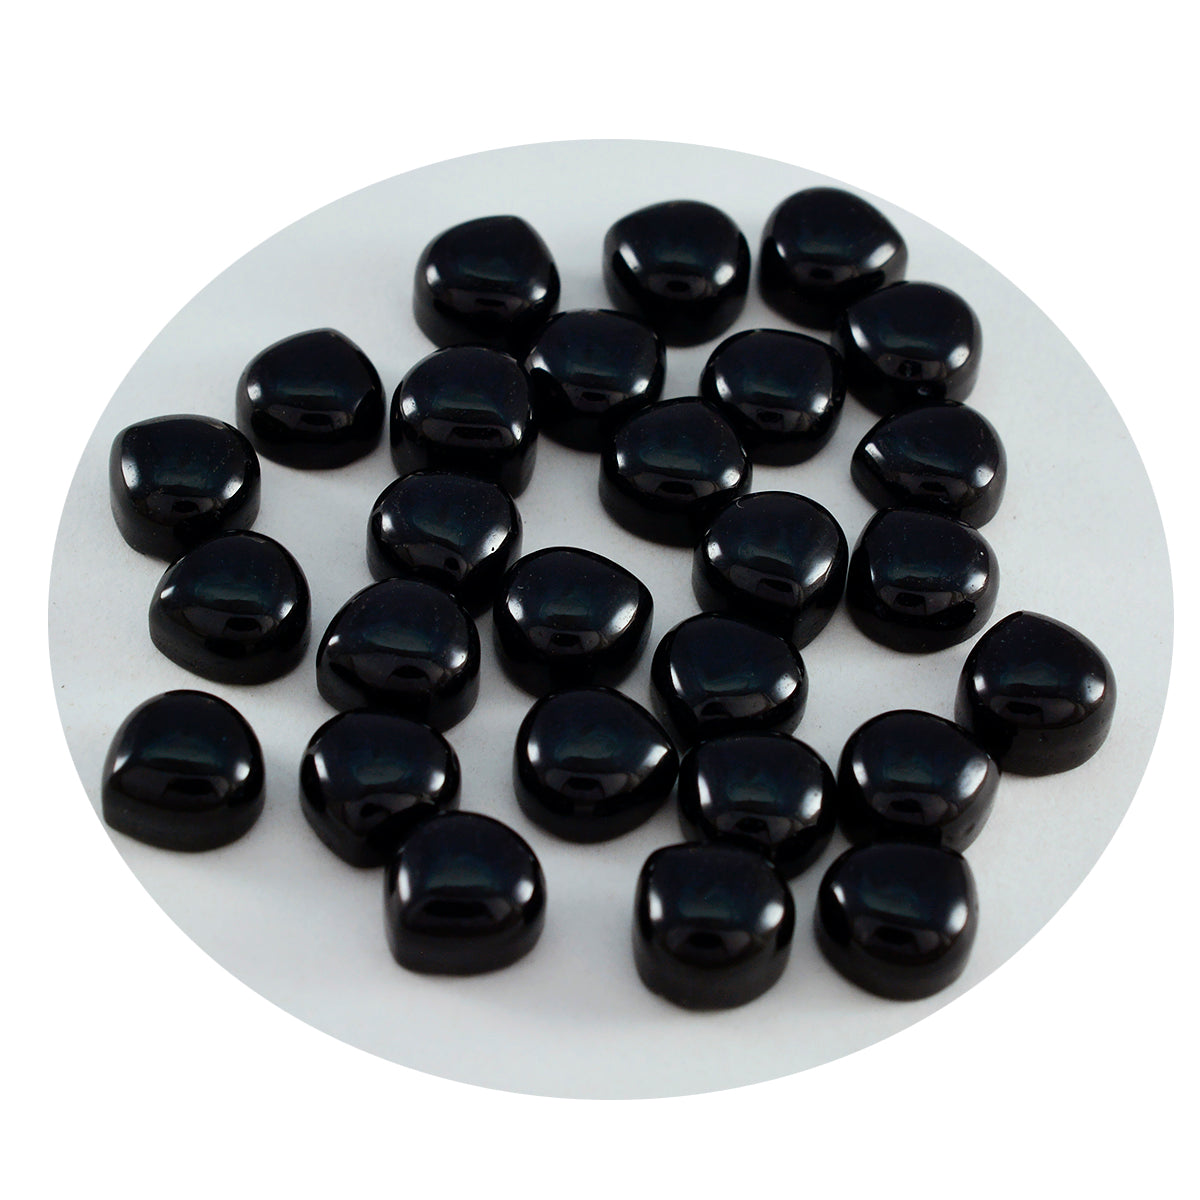 Riyogems 1 cabujón de ónix negro, 7 x 7 mm, forma de corazón, piedra preciosa suelta de calidad dulce